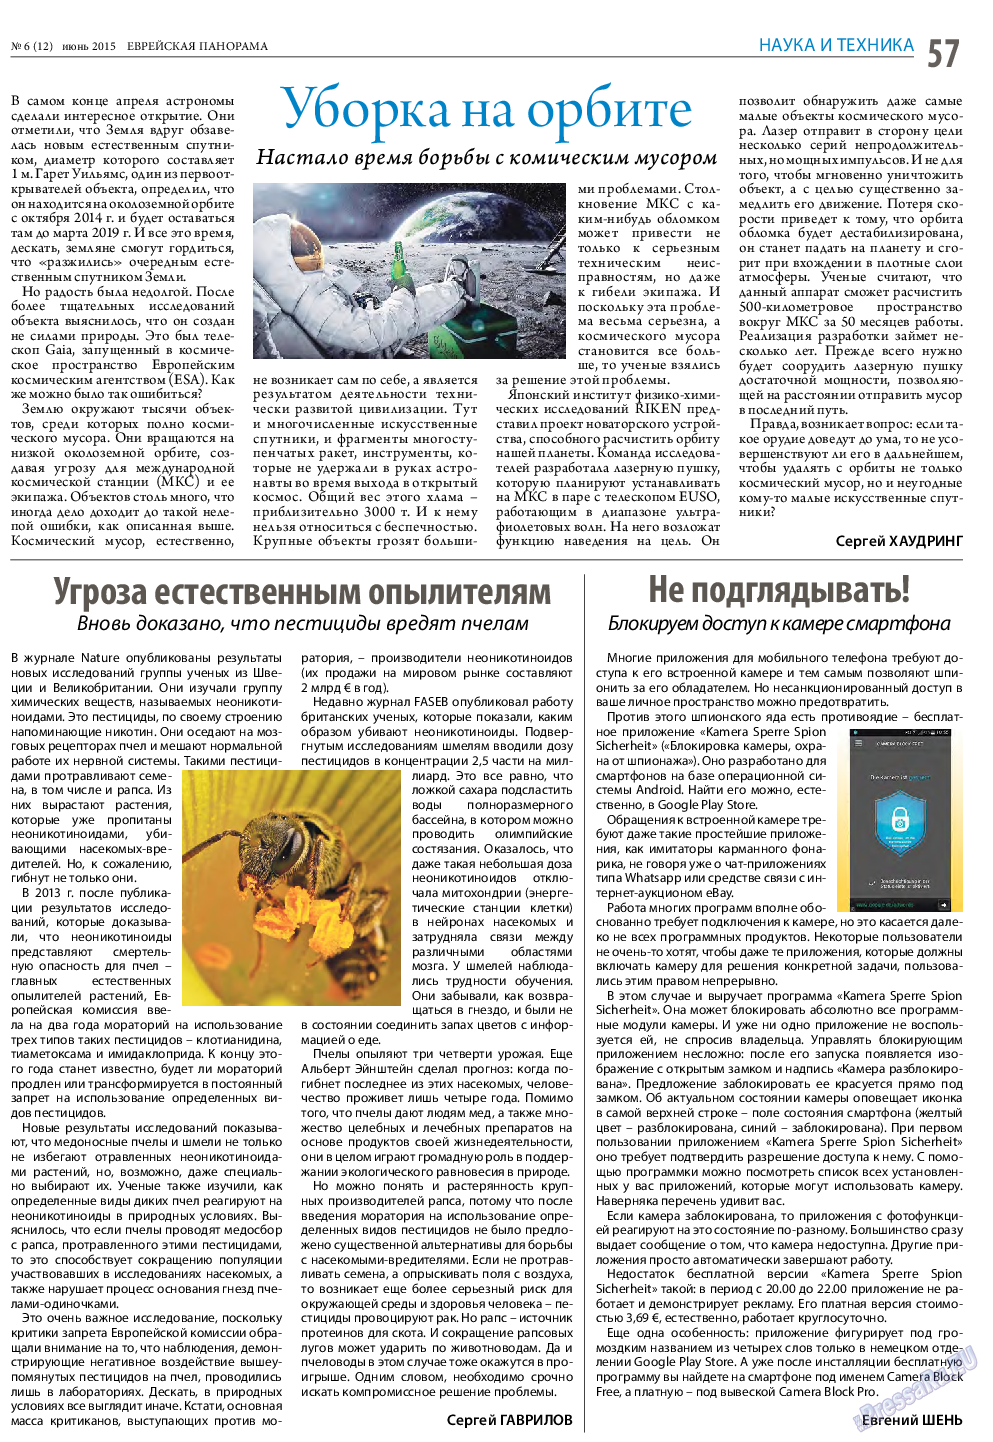 Еврейская панорама (газета). 2015 год, номер 6, стр. 57